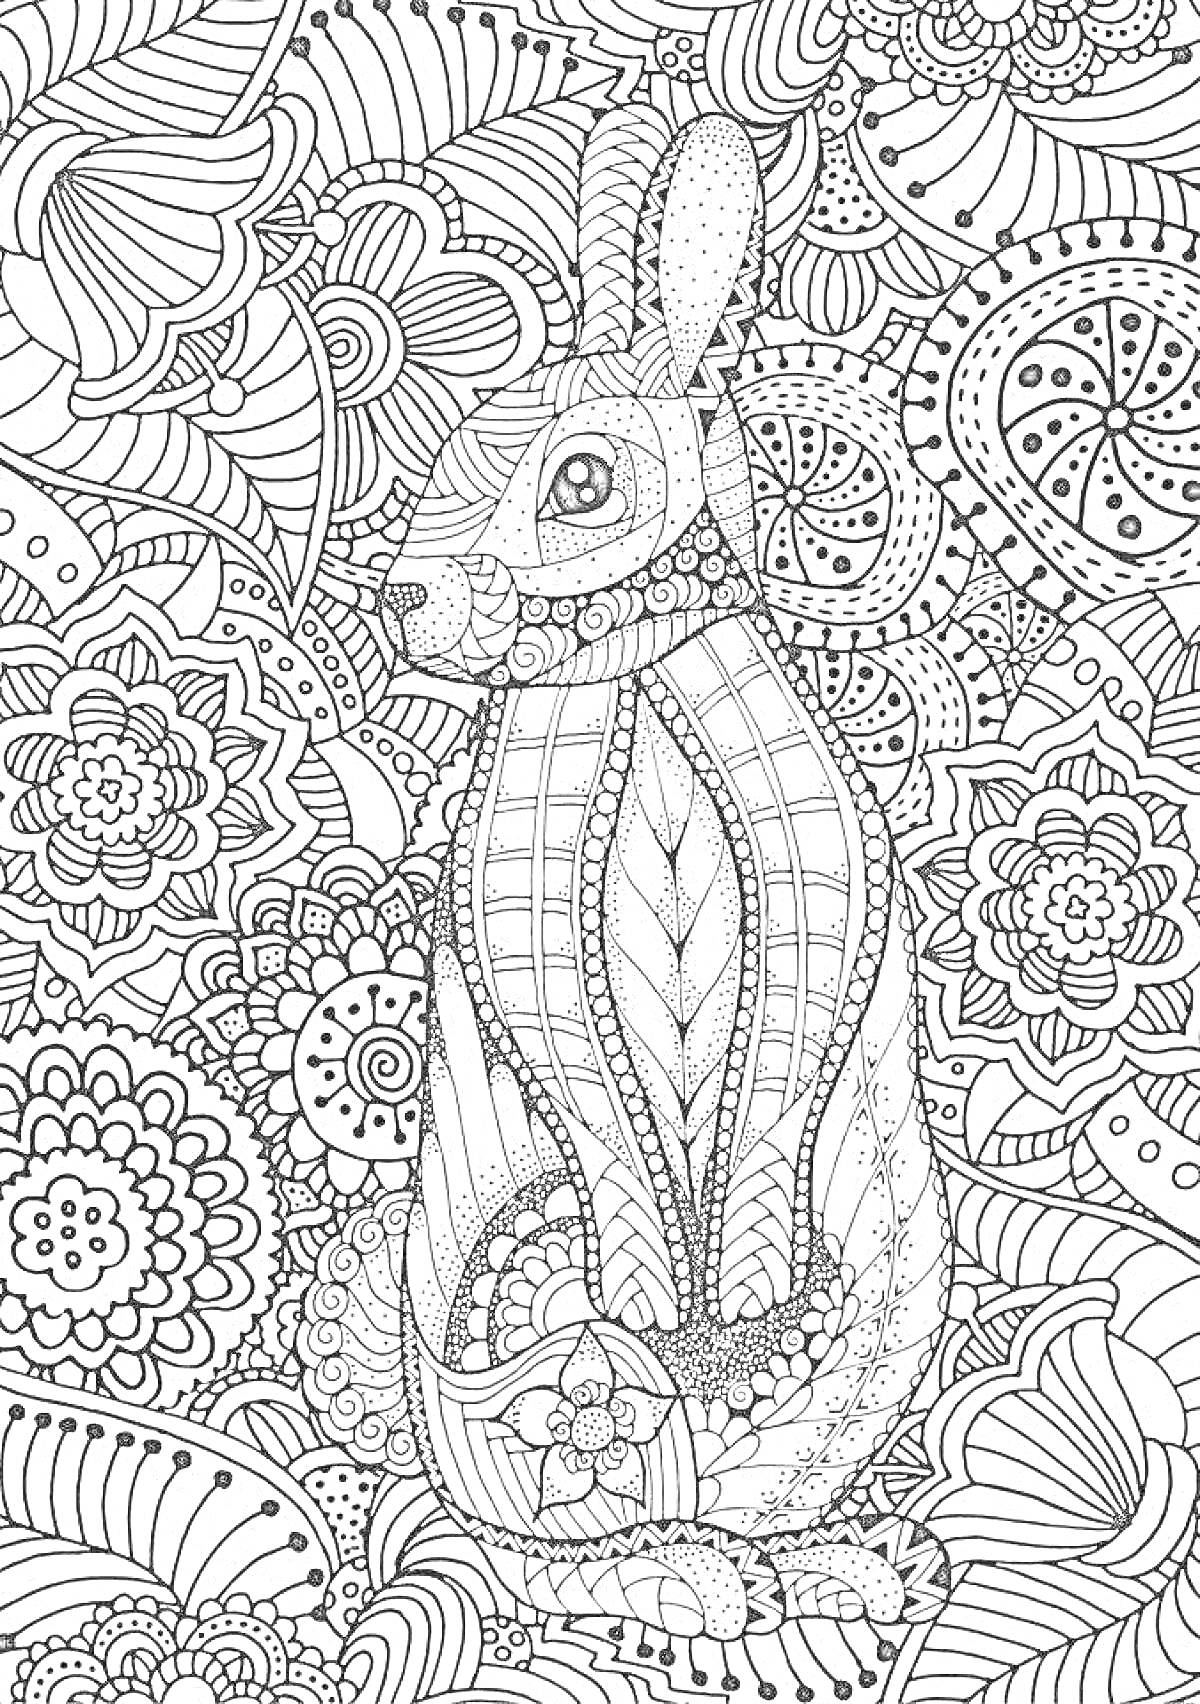 Раскраска Кролик среди узоров и цветков